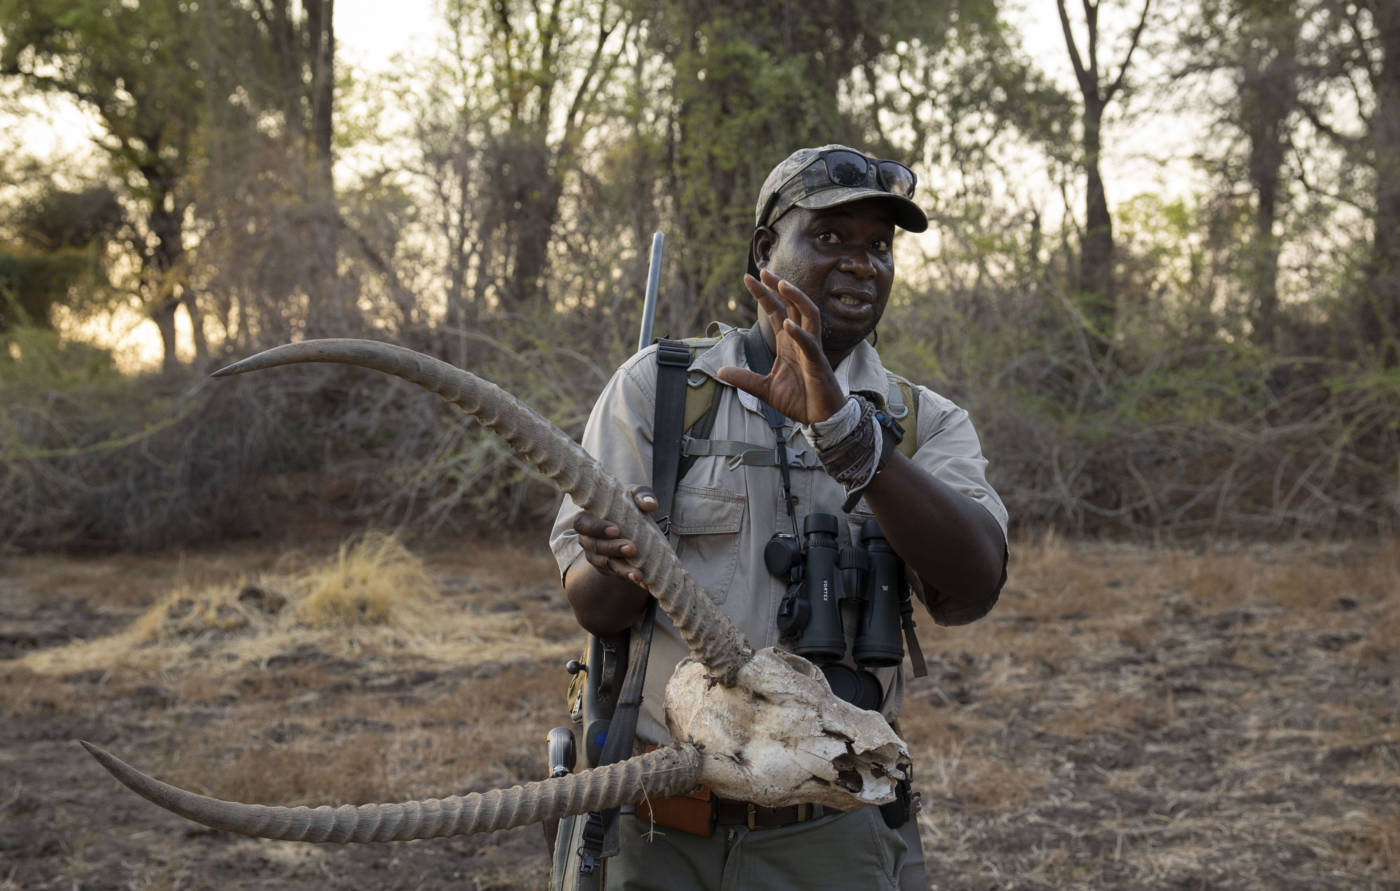 Zambezi Network - Great Plains Conservation